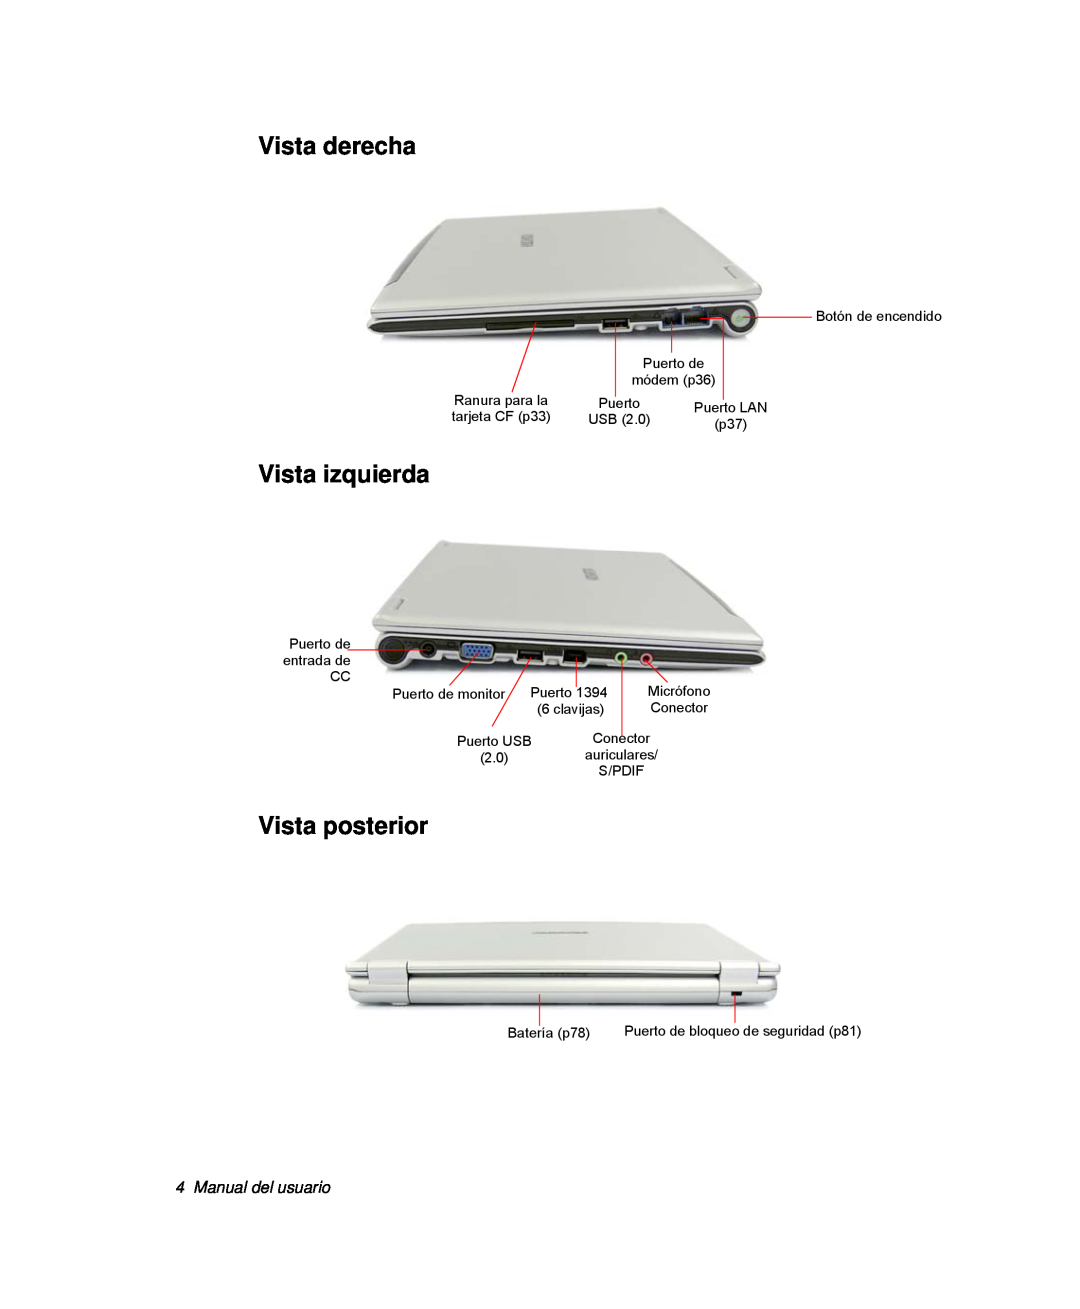 Samsung NP-Q30T002/SES, NP-Q30TY02/SES, NP-Q30T001/SES Vista derecha, Vista izquierda, Vista posterior, Manual del usuario 